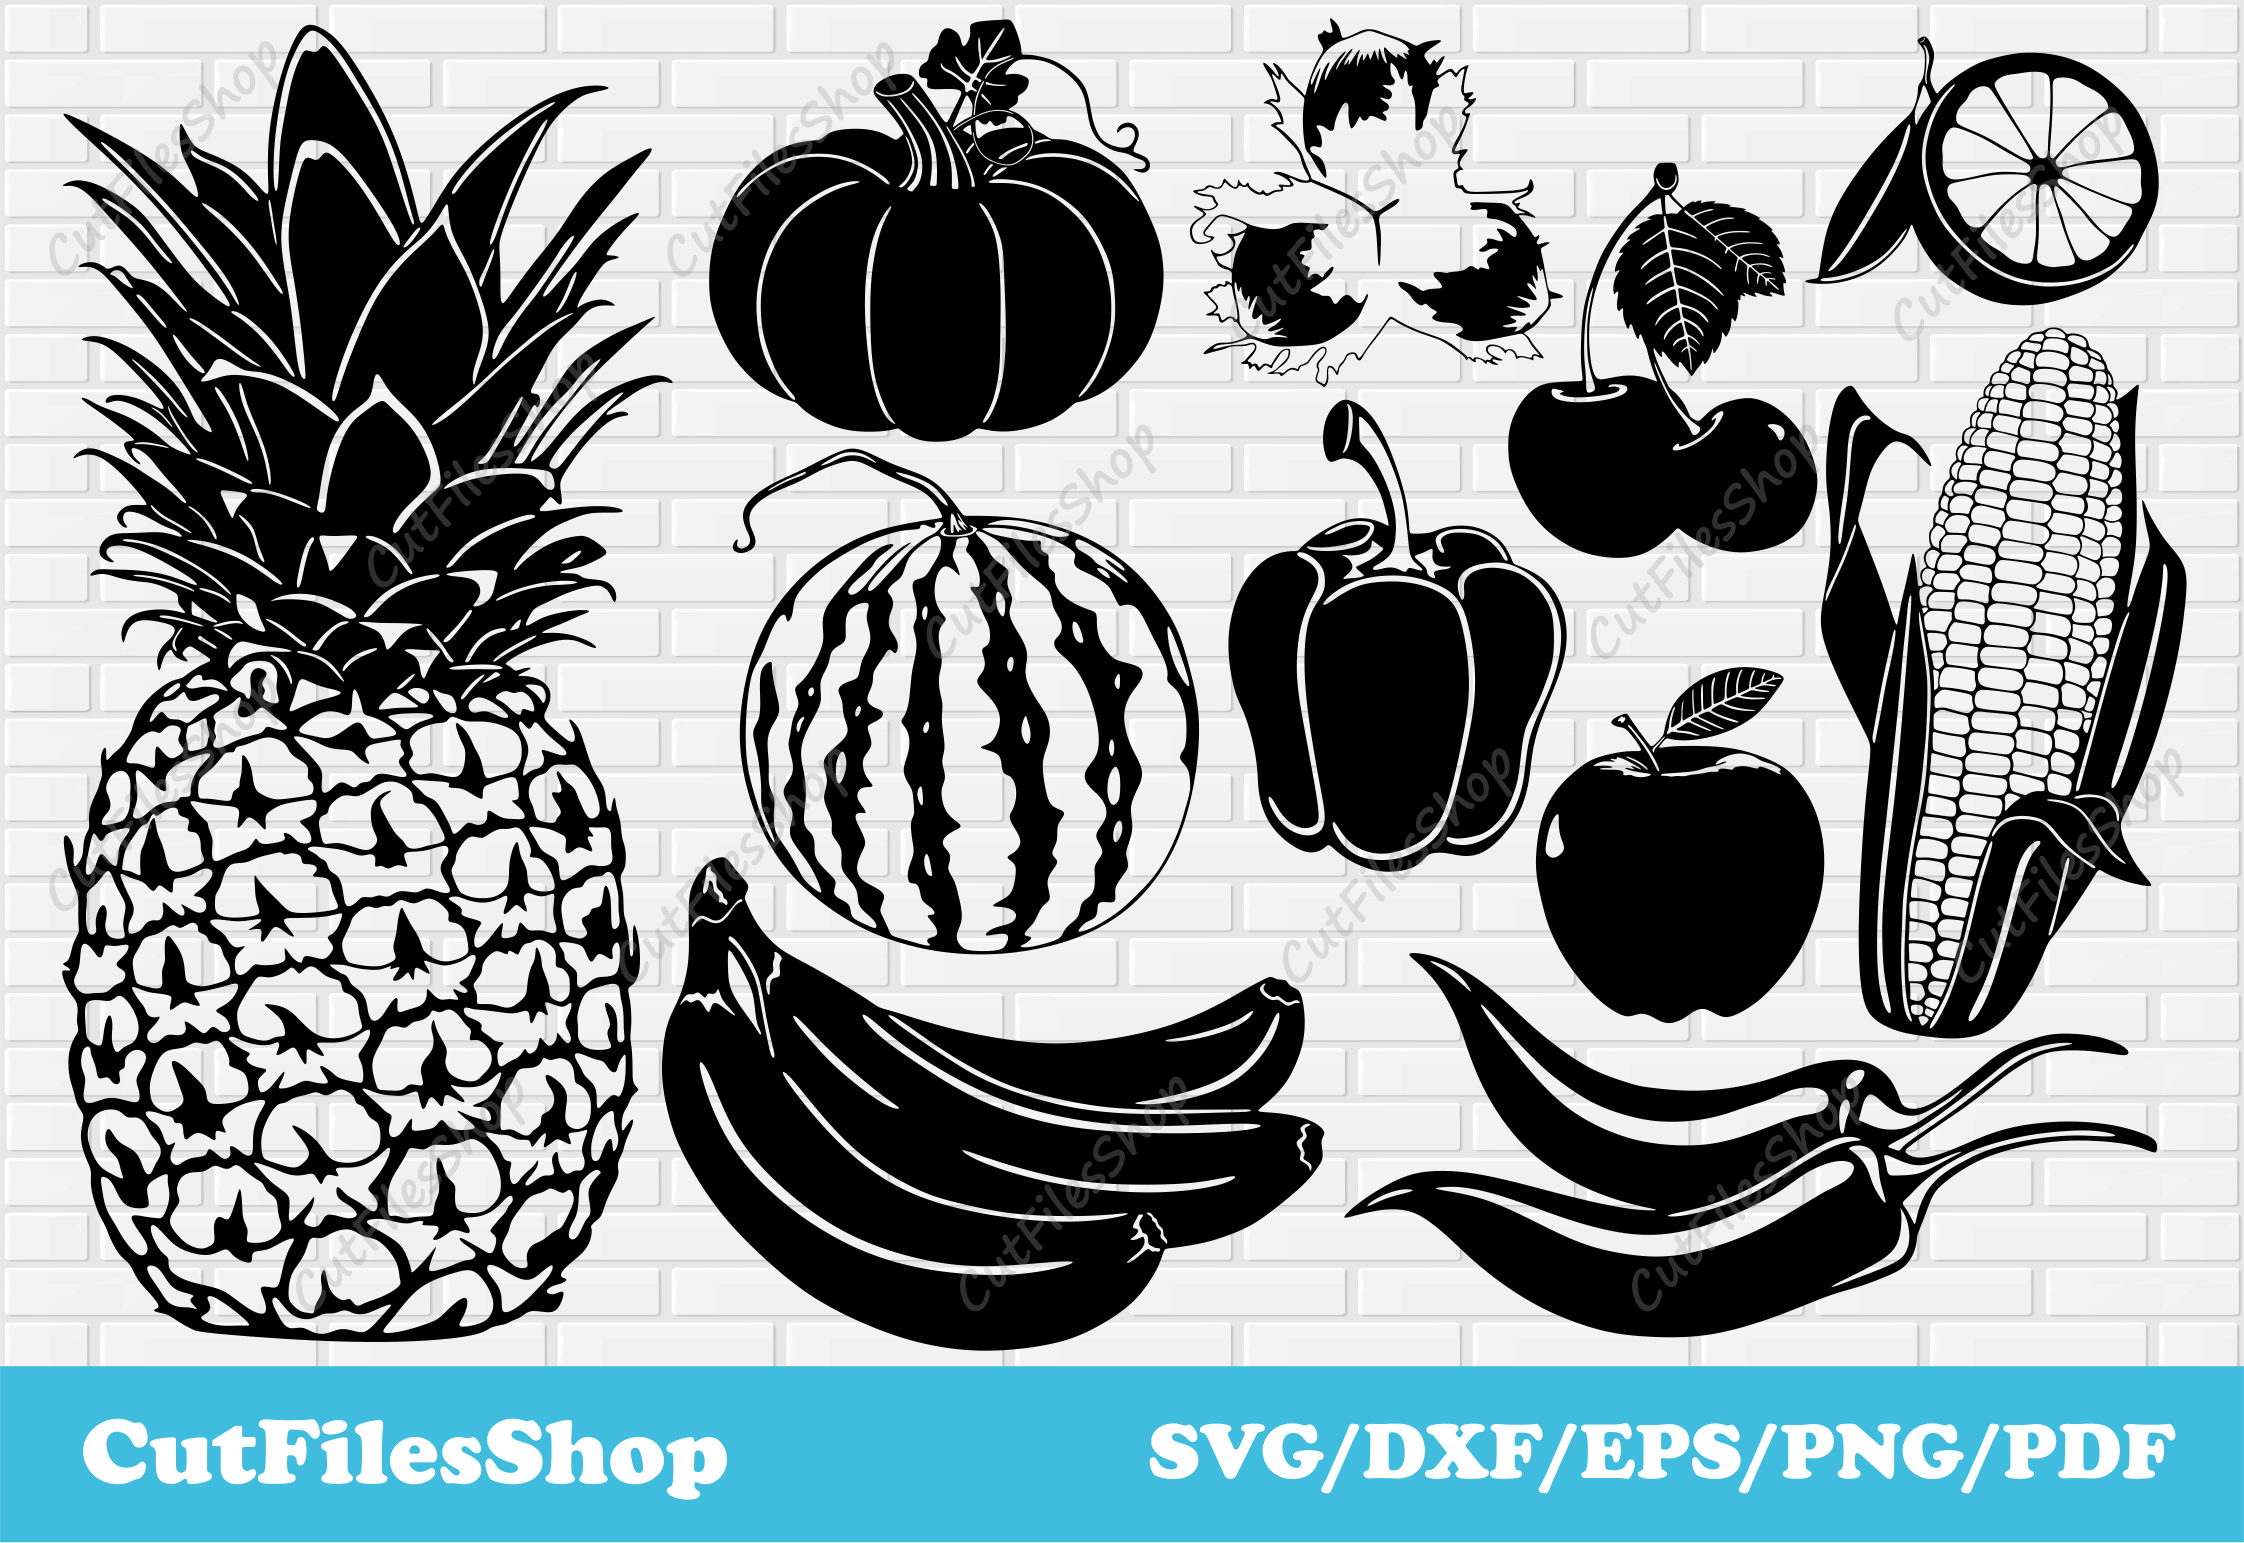 Fruits SVG Bundle, Engraving Stencils, SVG Stencils for Wood